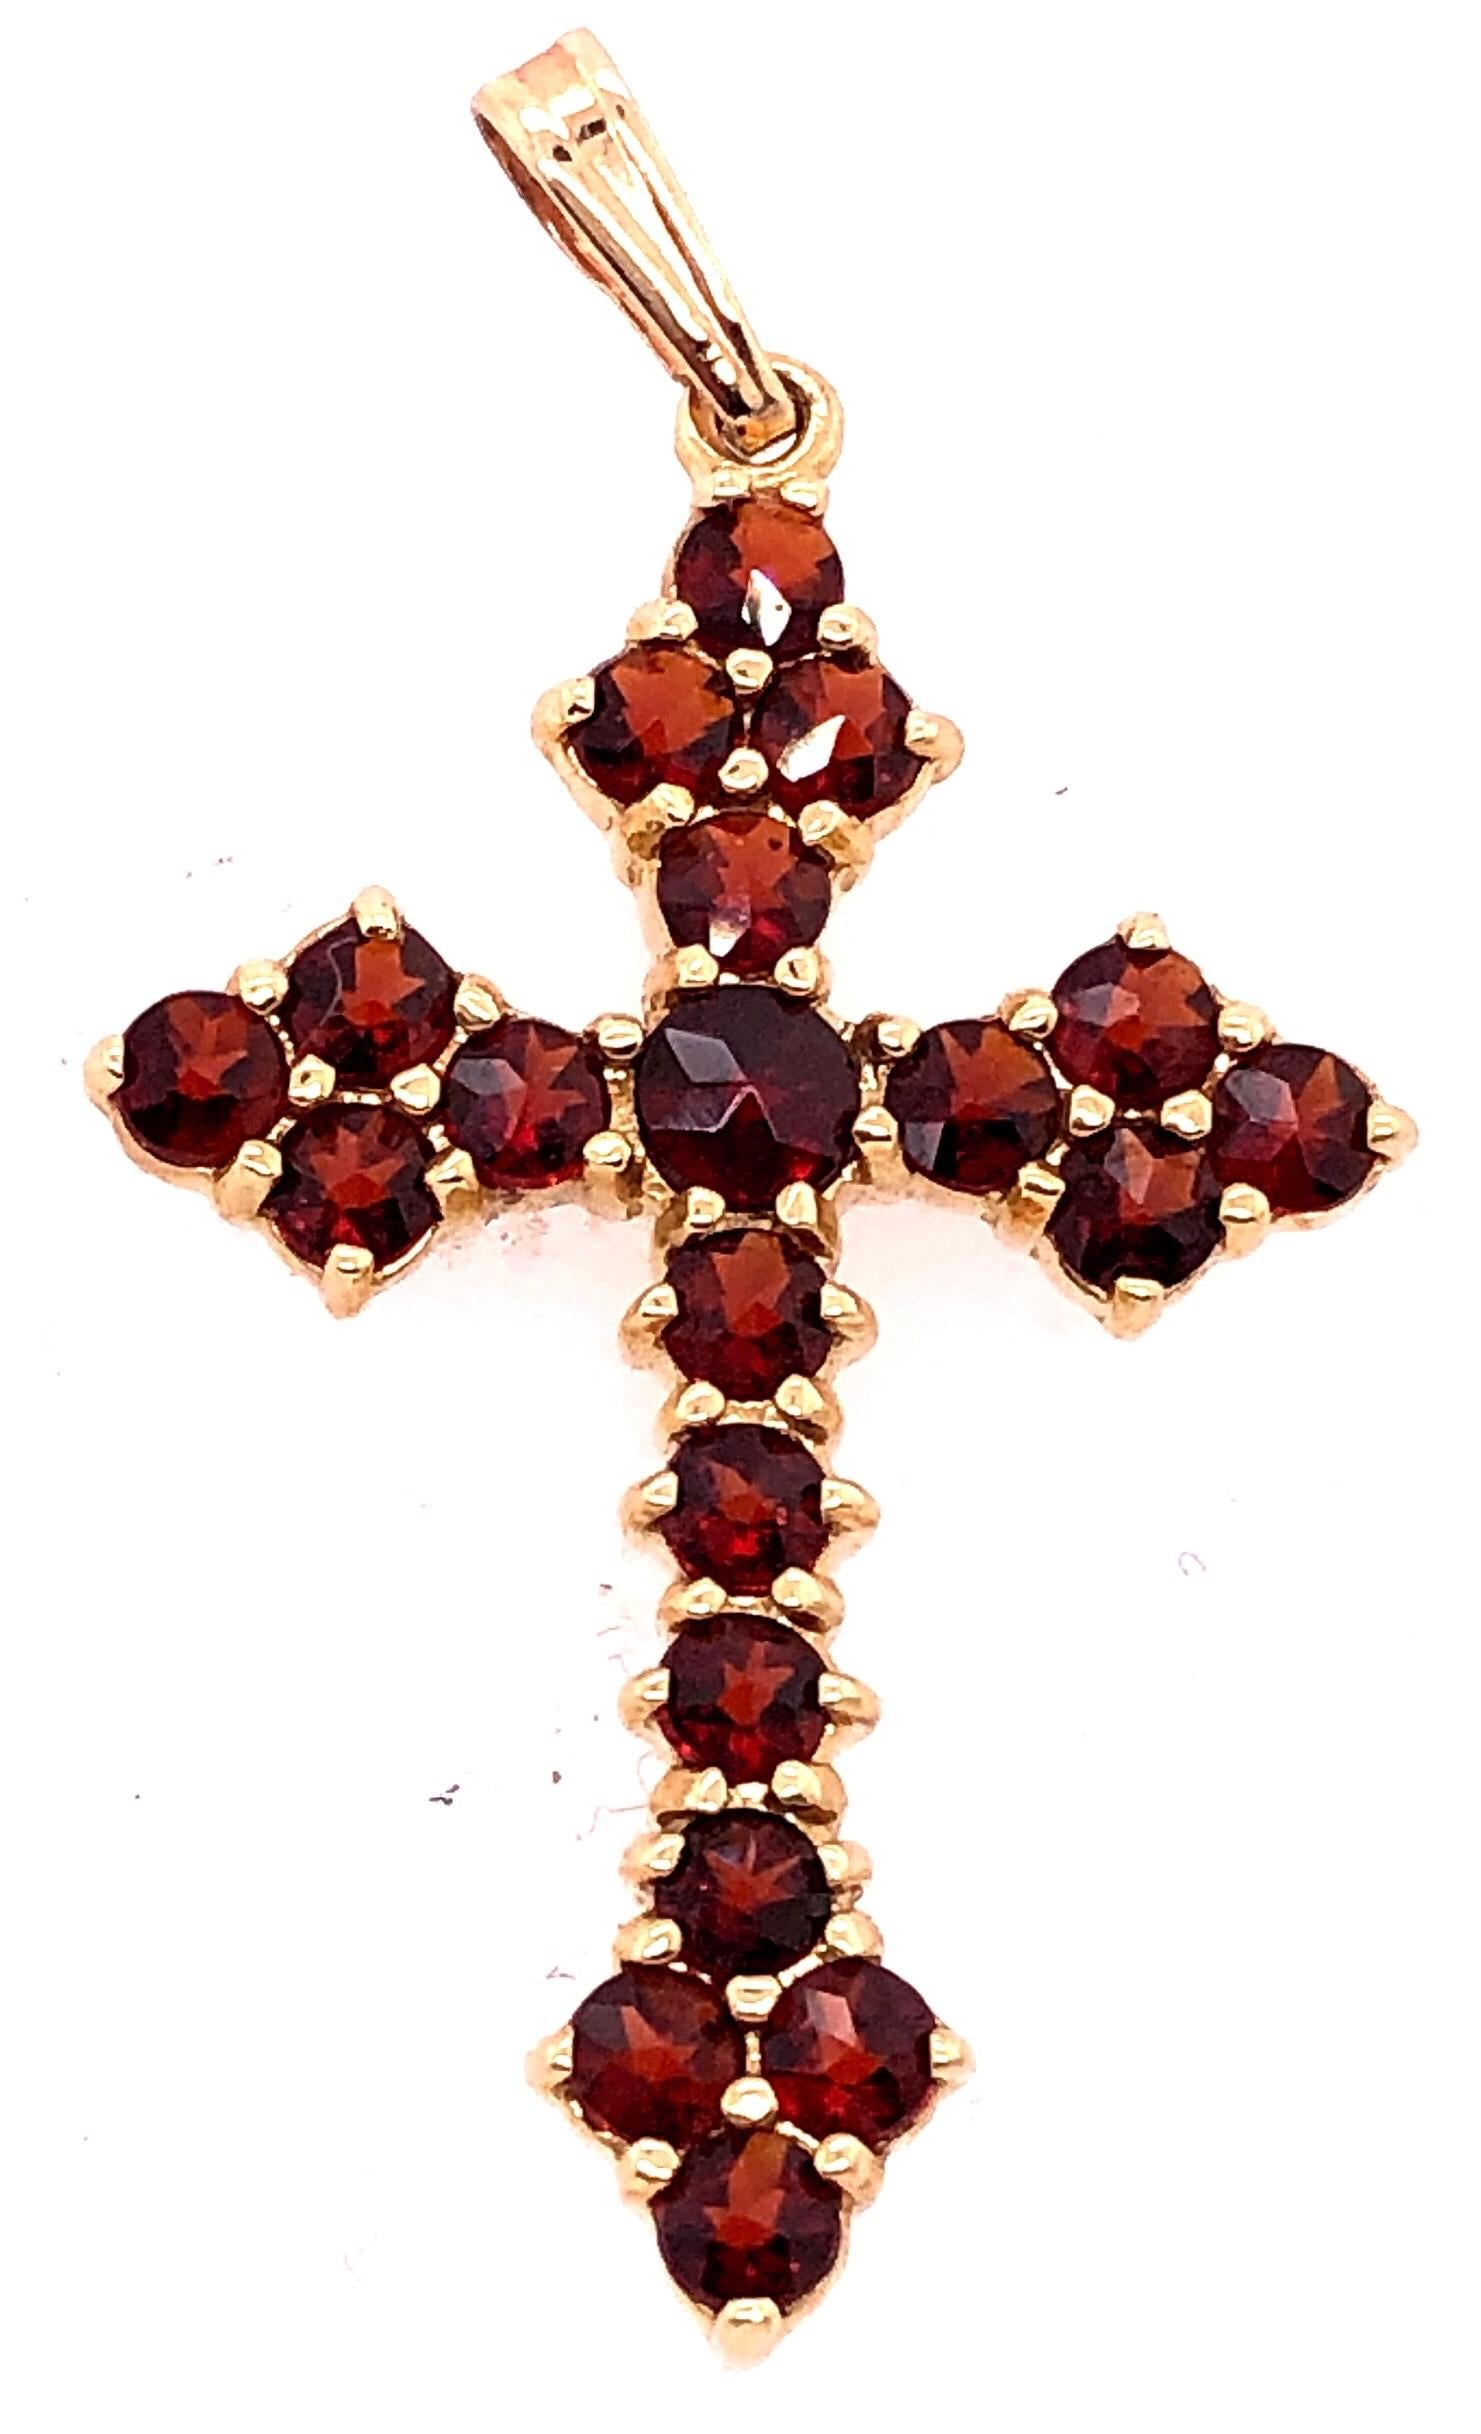 14 Karat Gelbgold Religiöser / Kruzifix-Anhänger mit Halbedelsteinen.
3 Gramm Gesamtgewicht.